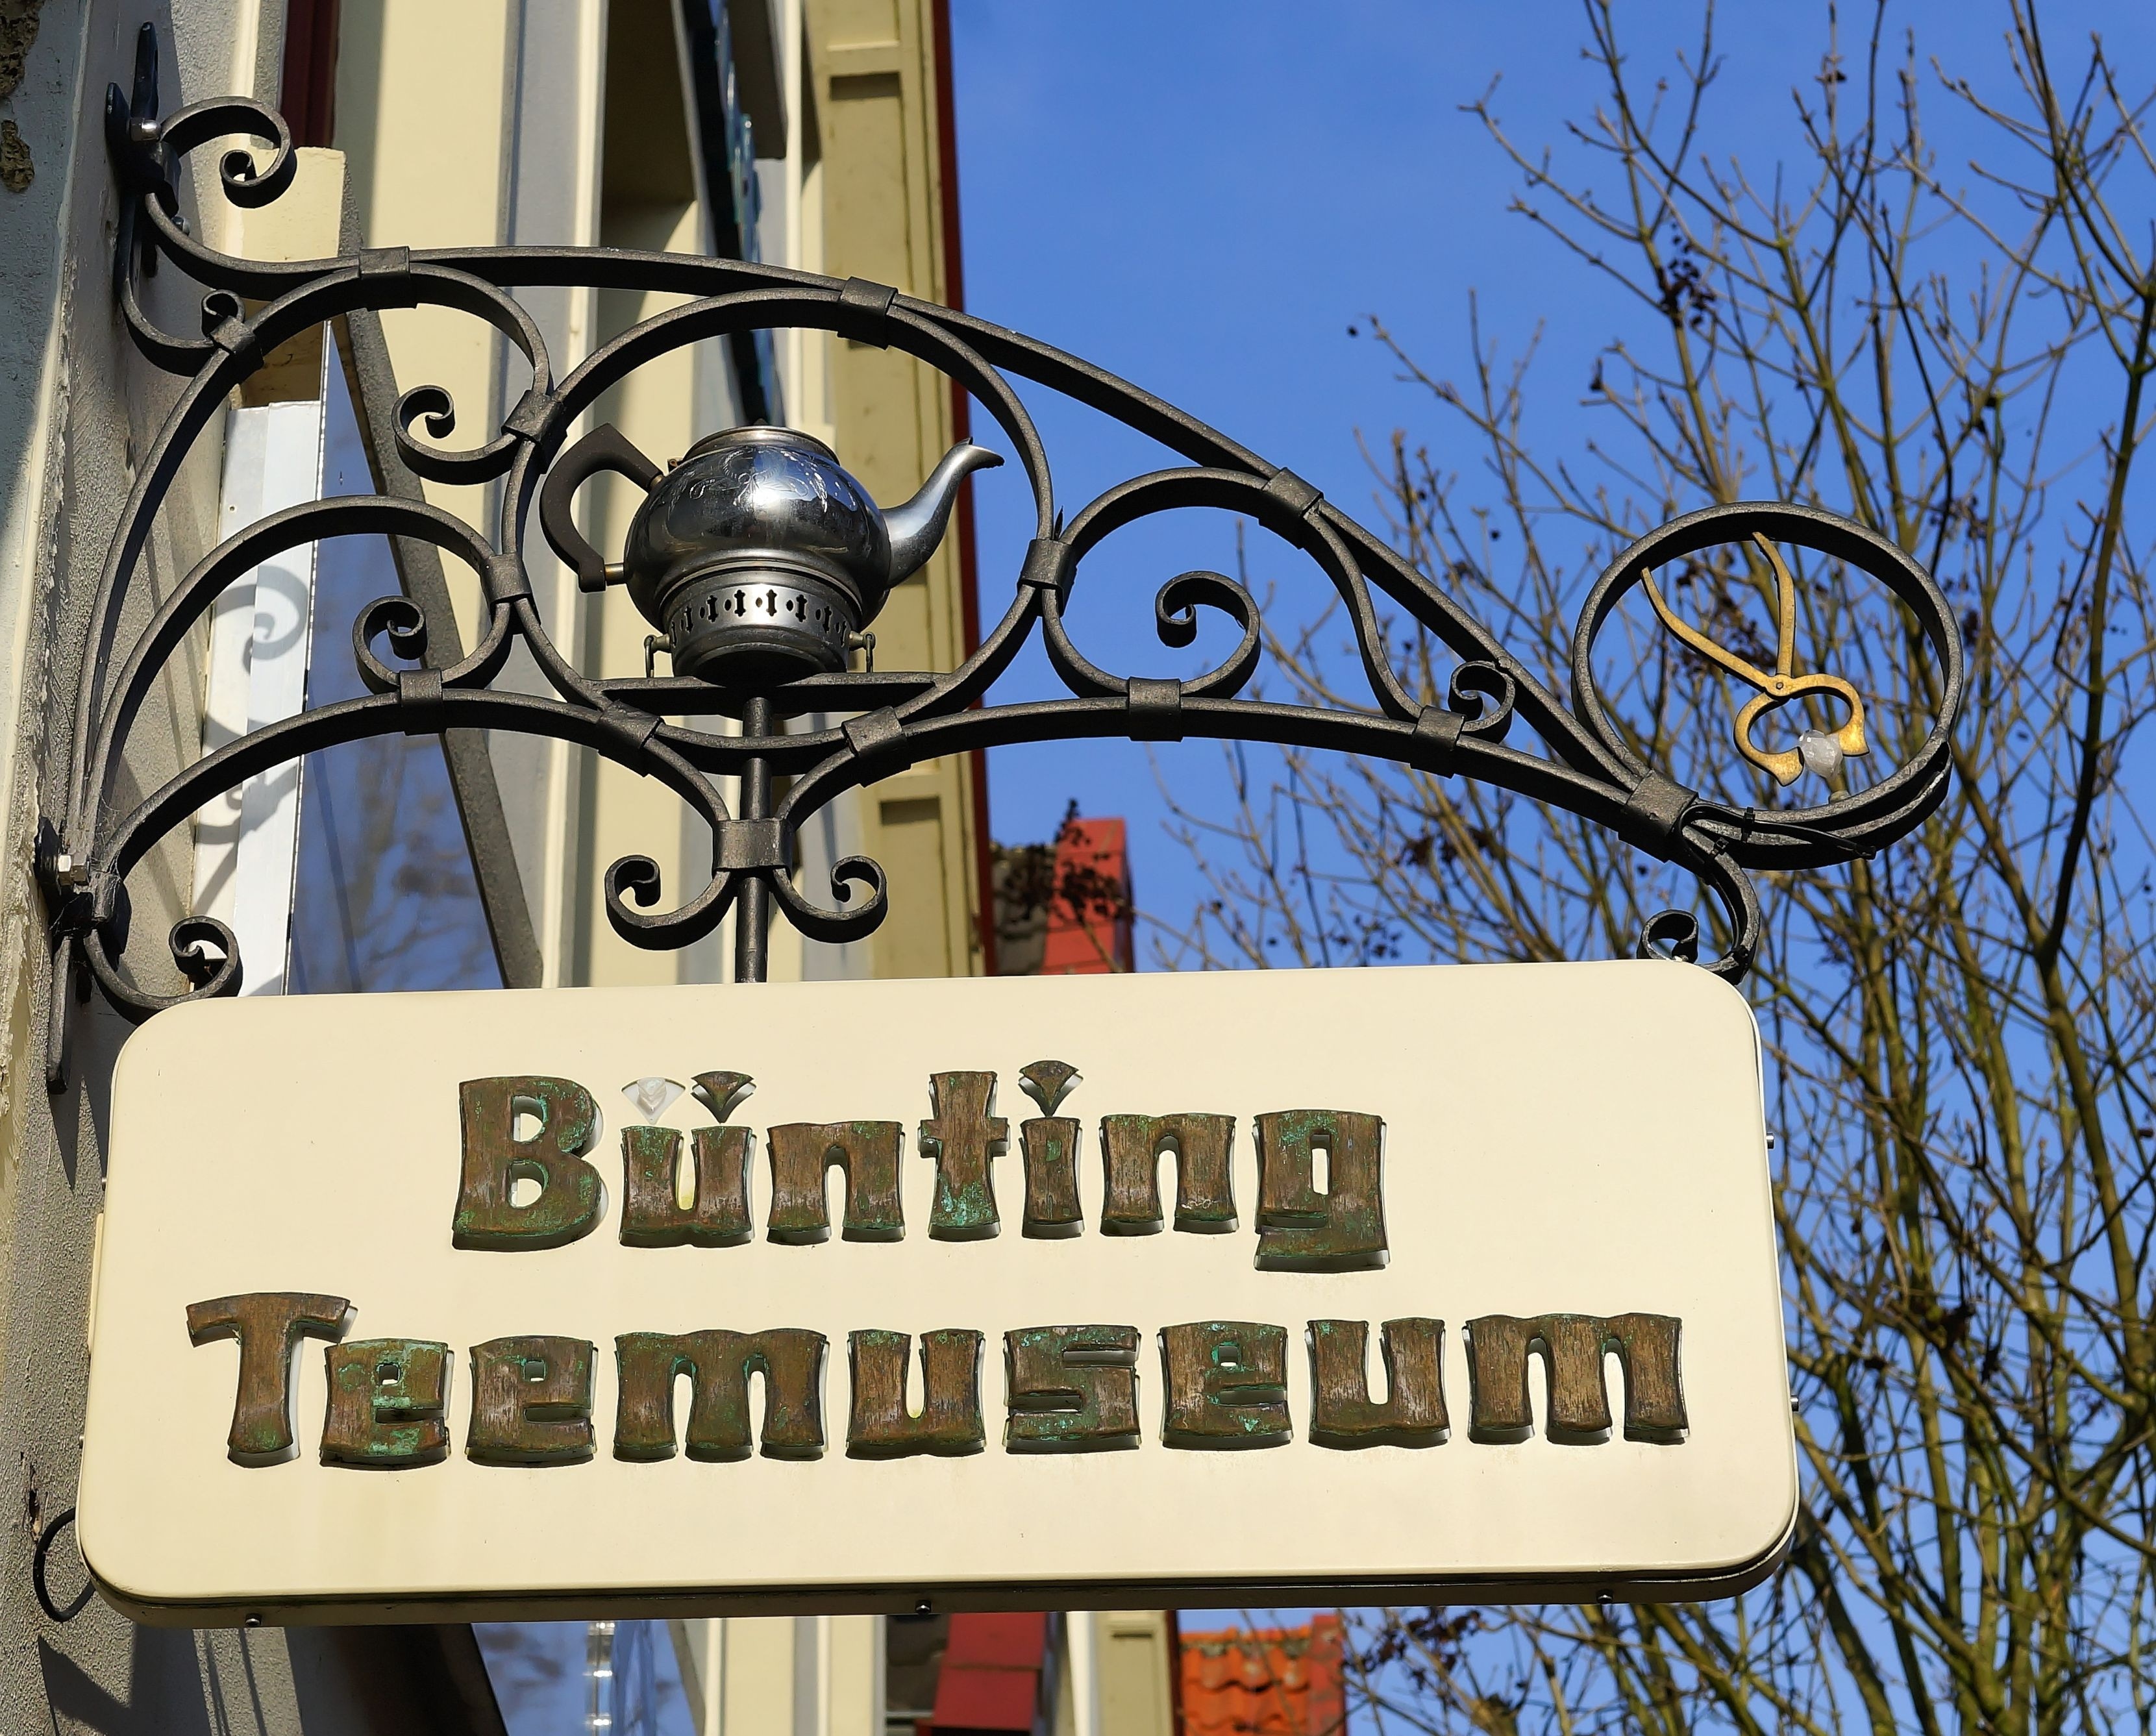 bunting teemuseum signage